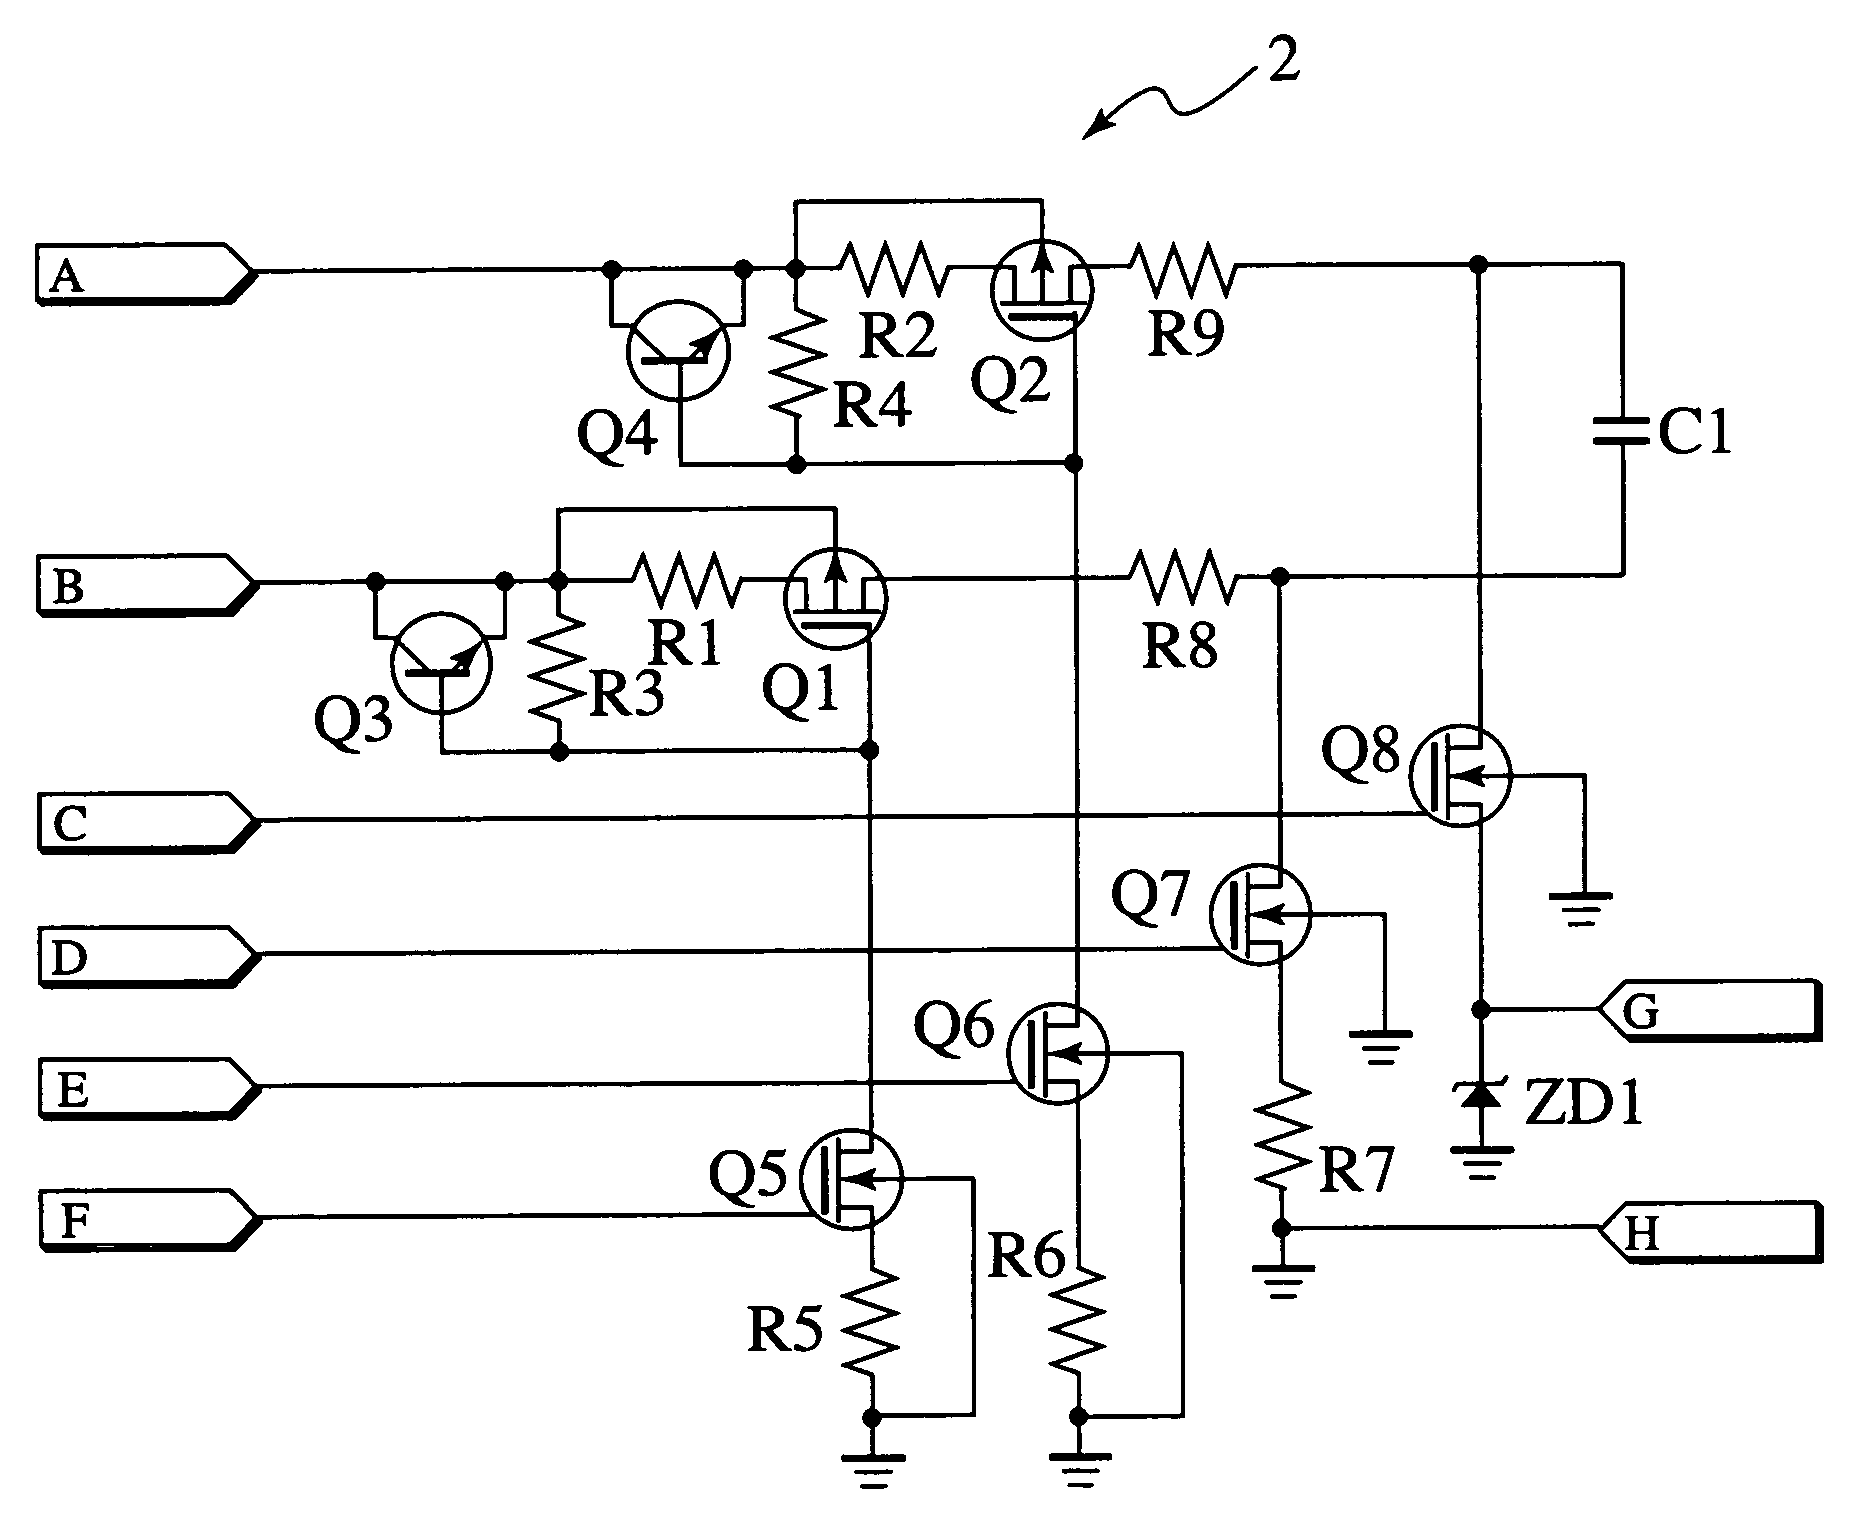 Voltage measurement device